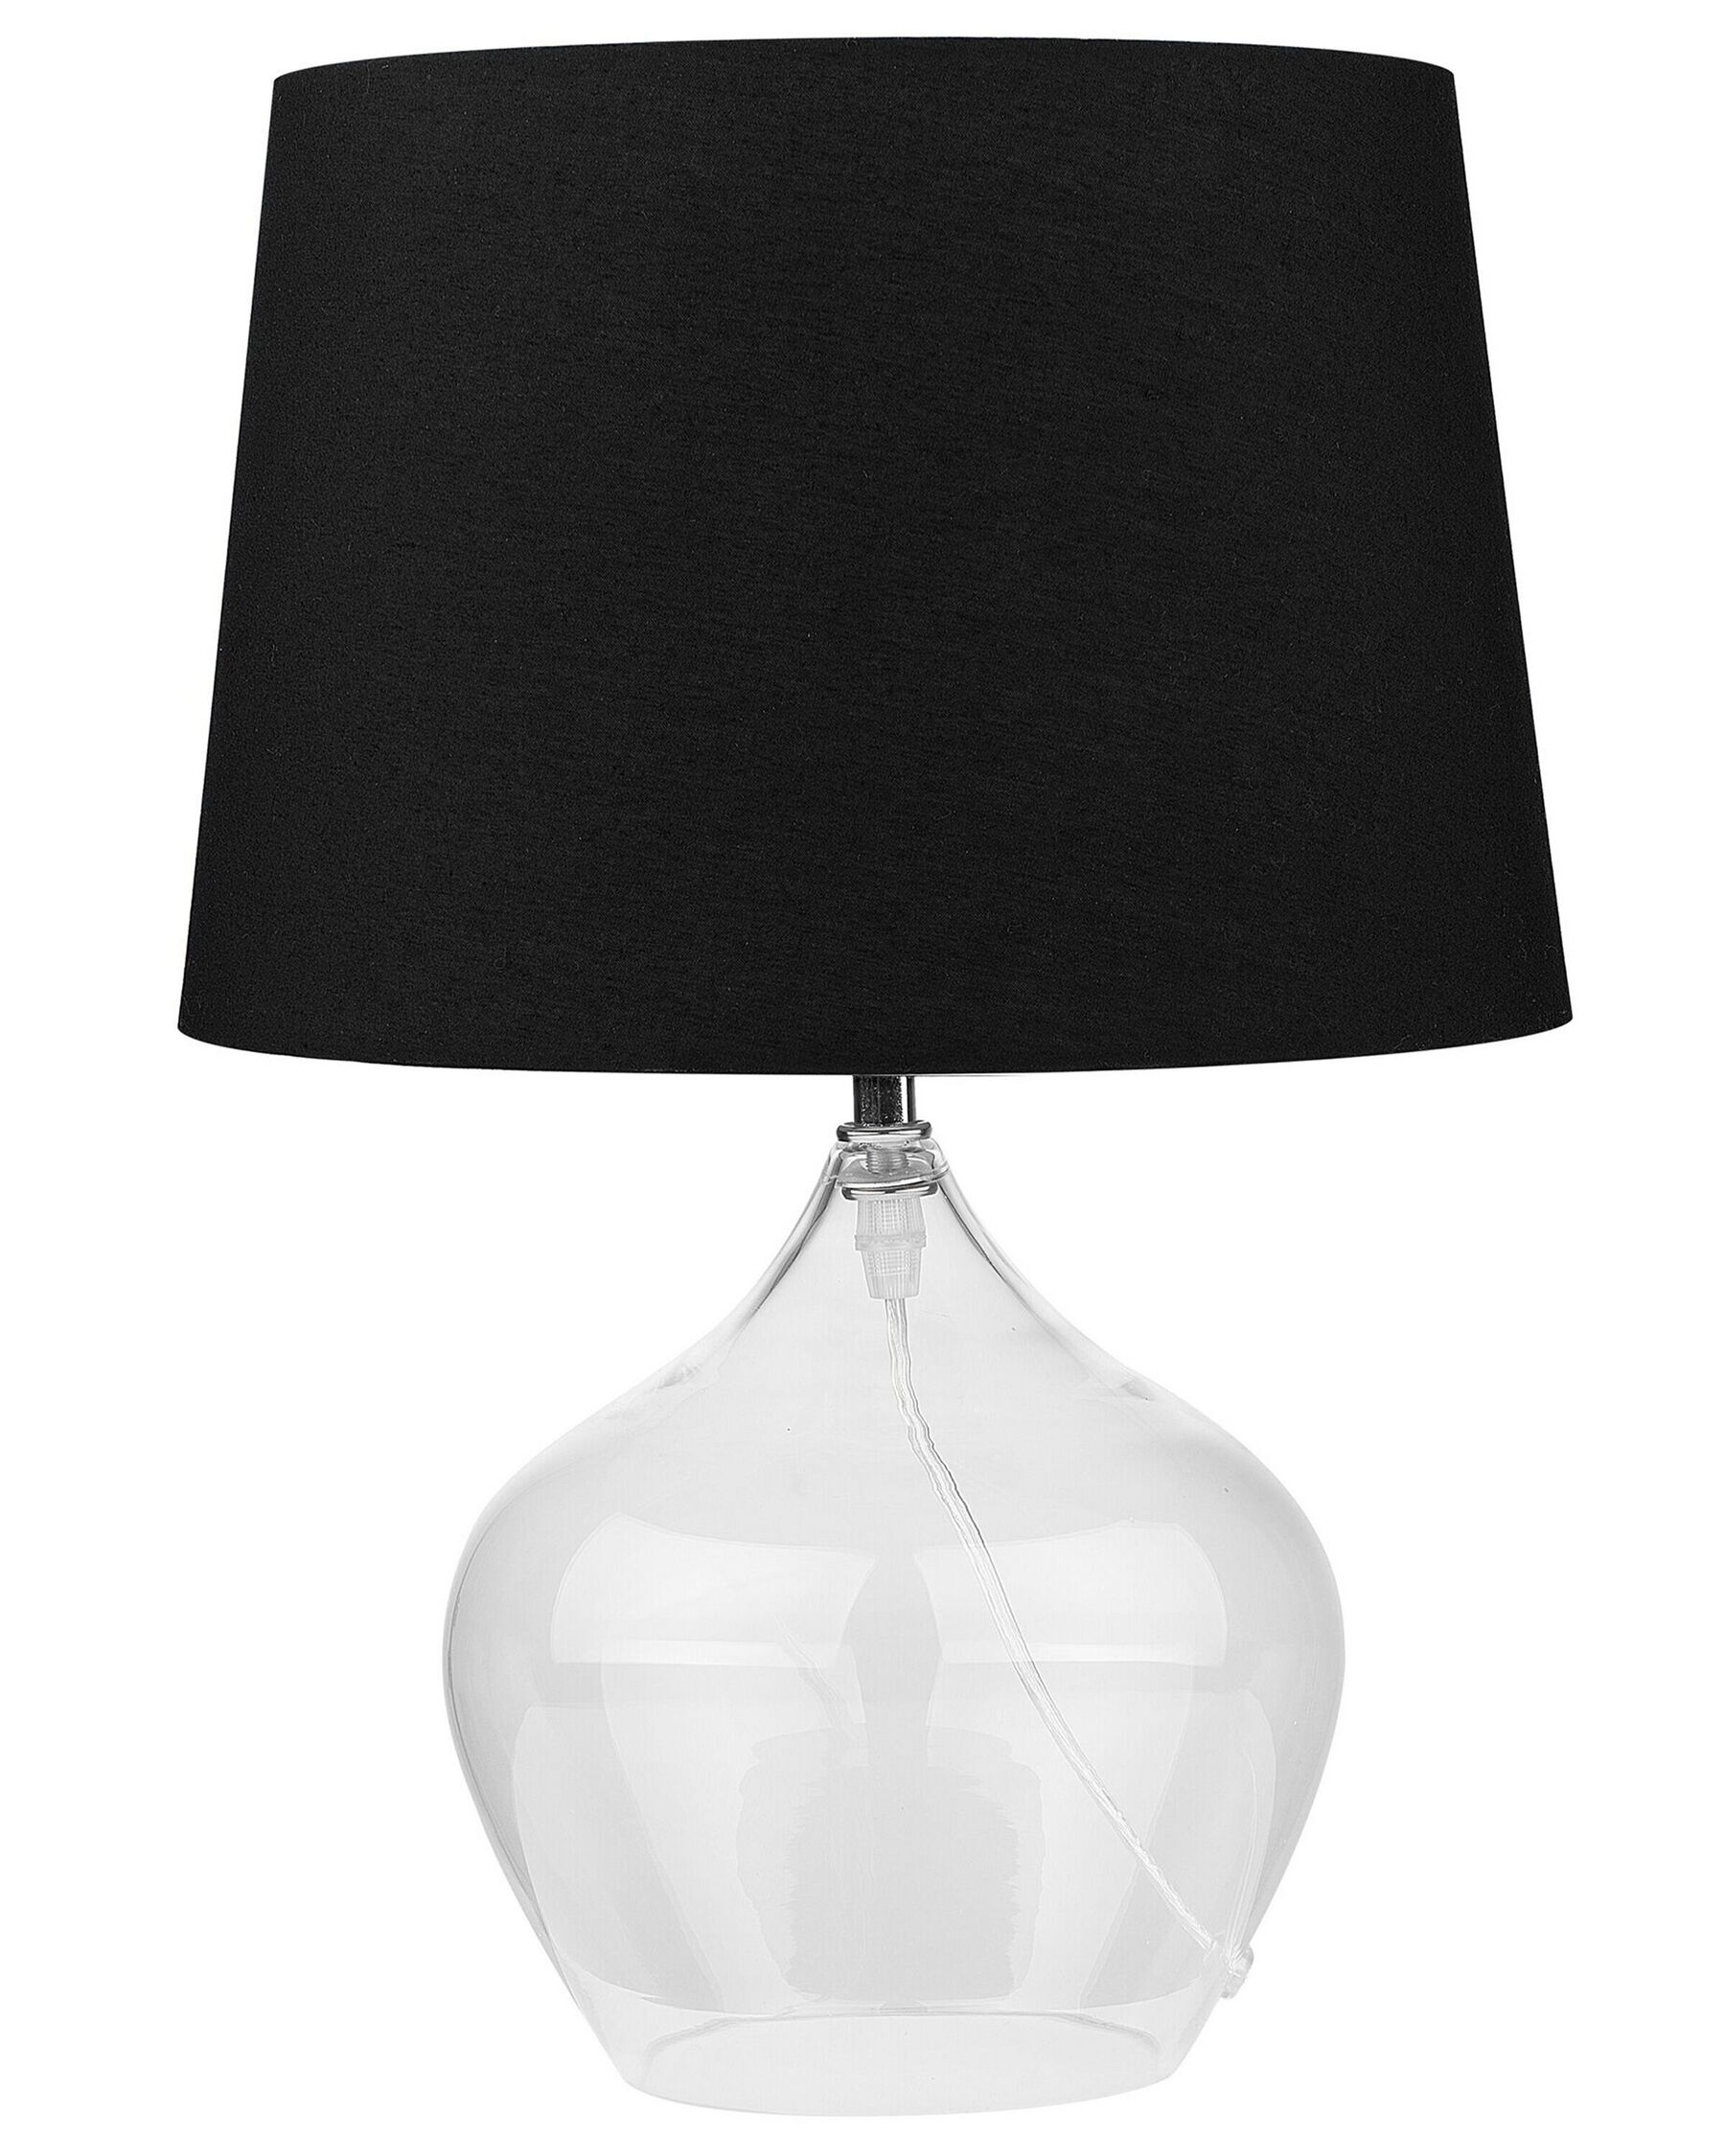 Tischlampe Glas transparent / schwarz 45 cm Trommelform OSUM_726604